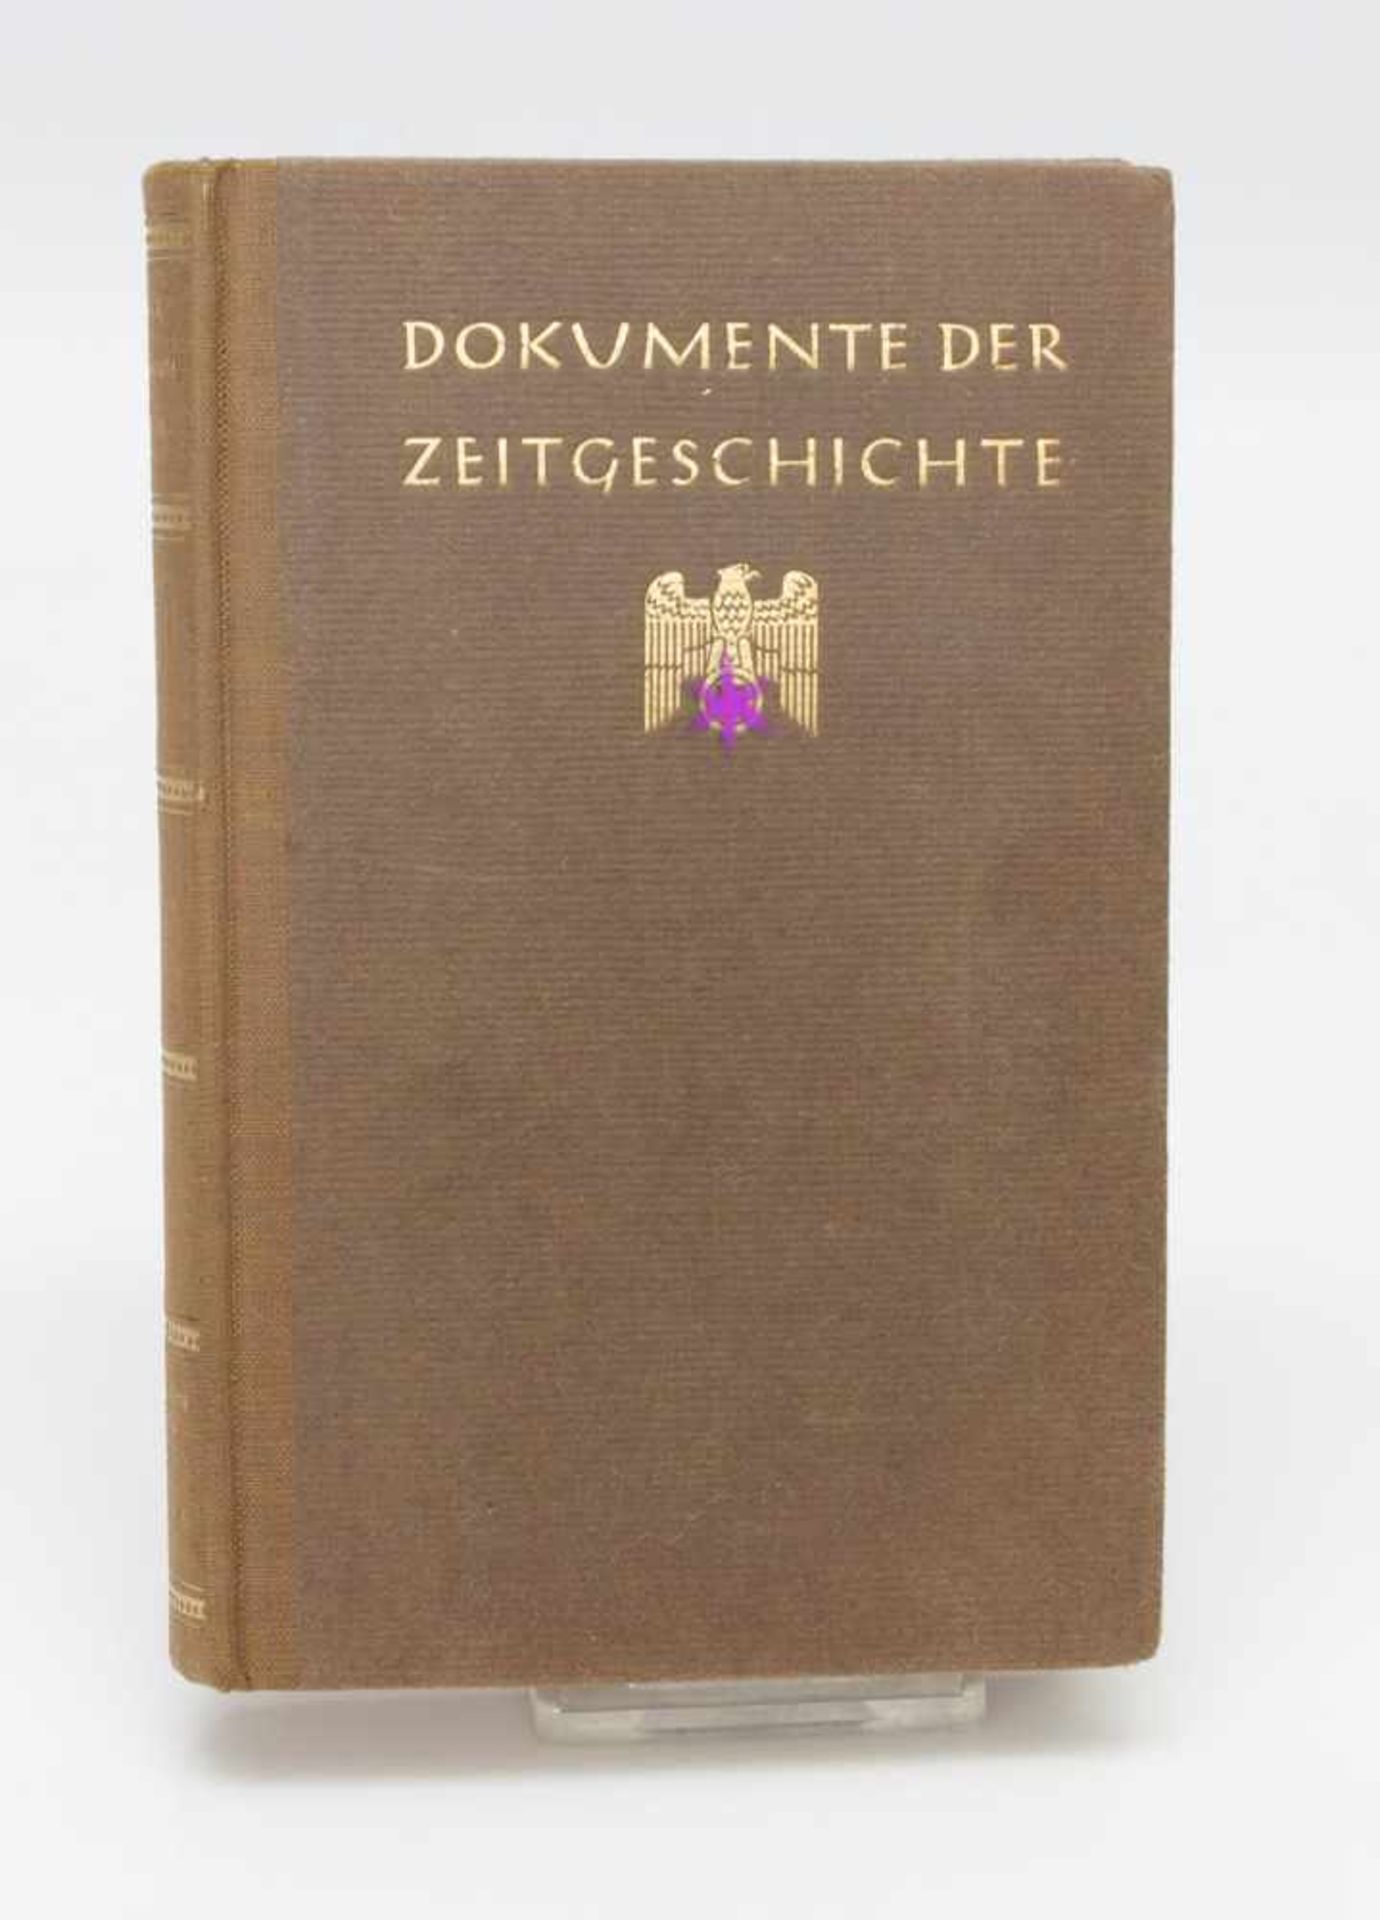 Fritz Maier-Hartmann (Hrsg.)„Dokumente der Zeitgeschichte Bd. 1“, Zentralverlag de